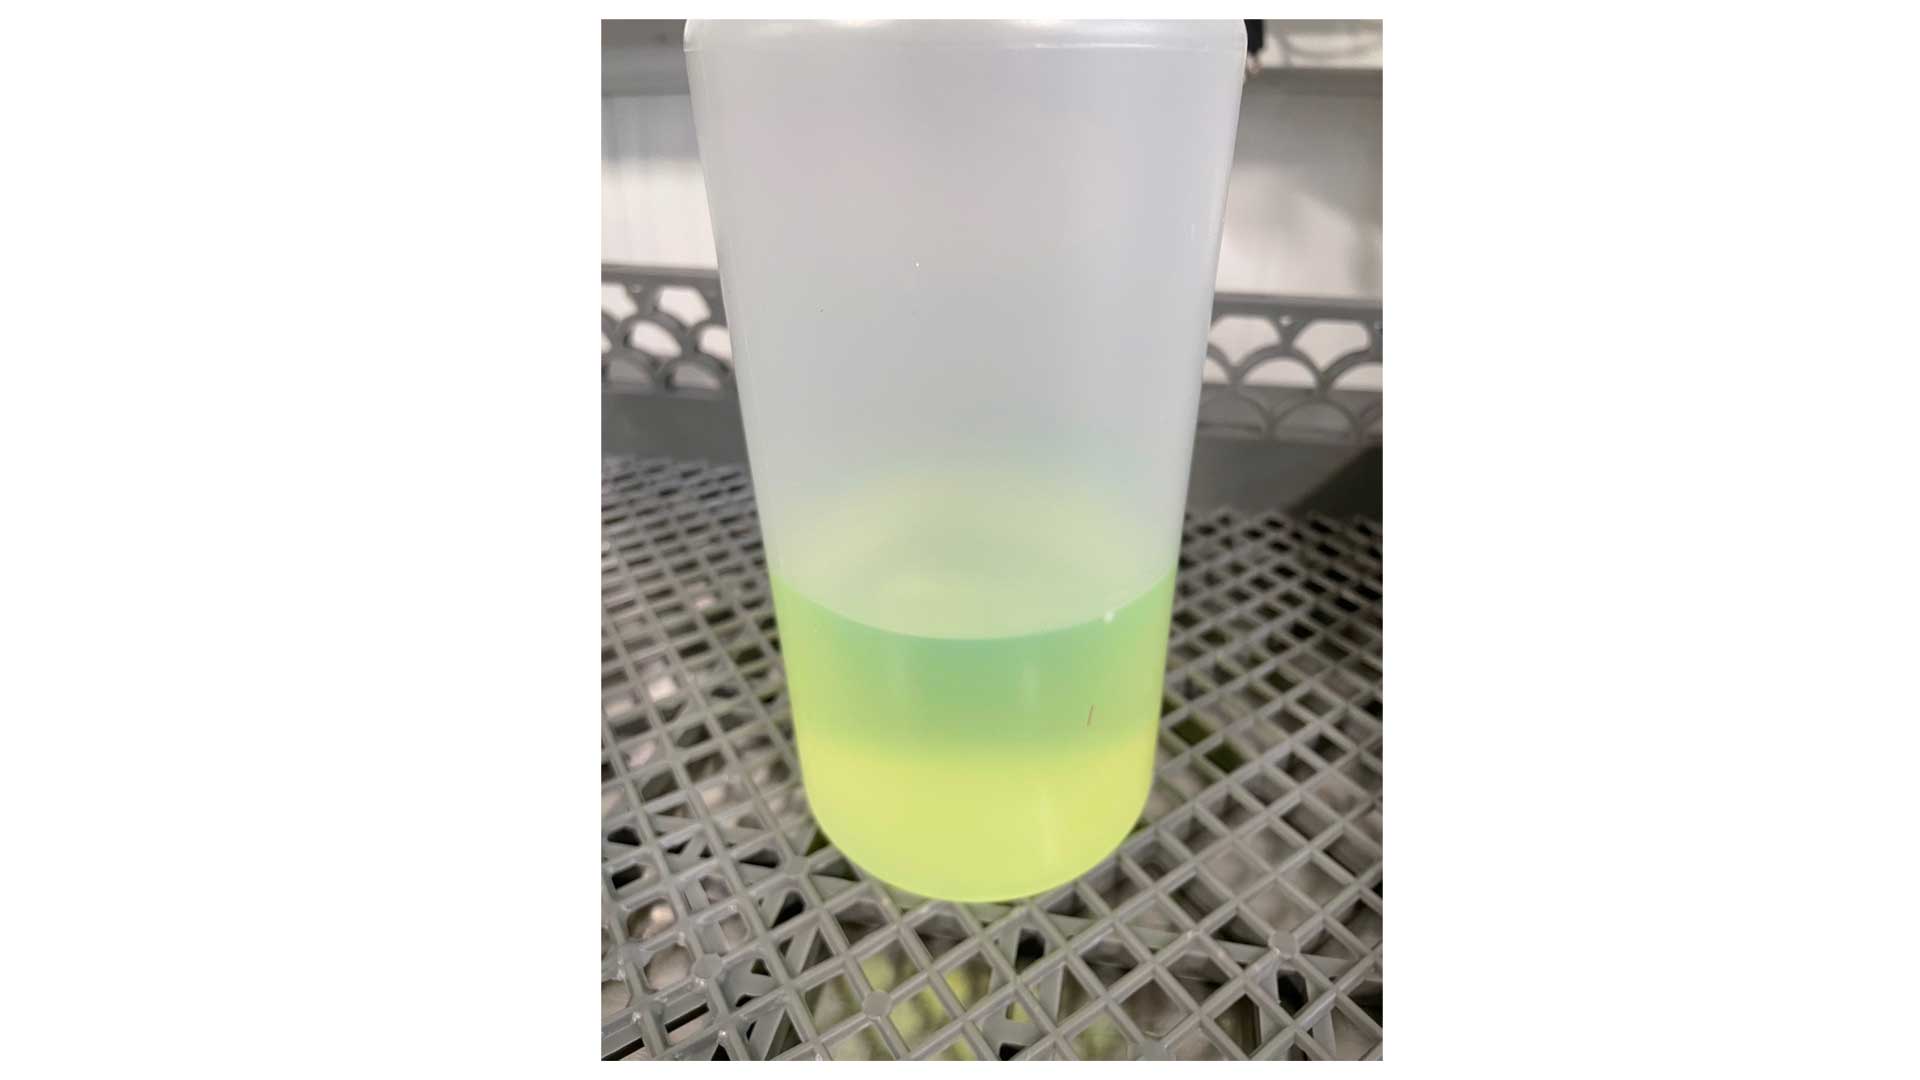 Dye penetrant dissolved in the solvent.